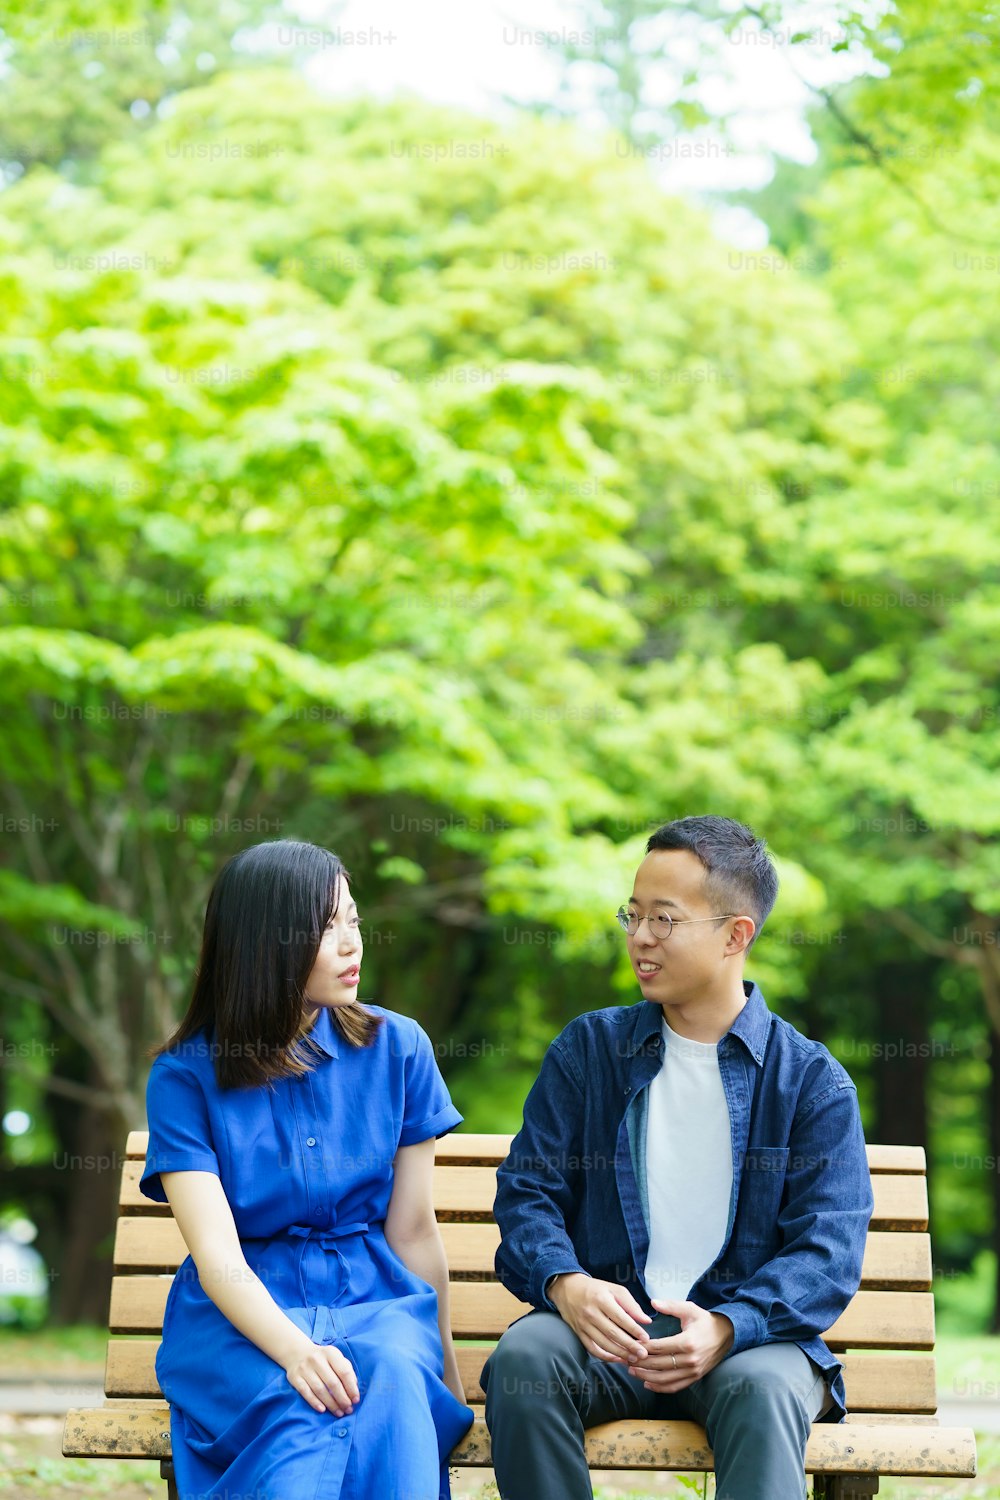 Un jeune couple discutant sur un banc dans un parc verdoyant